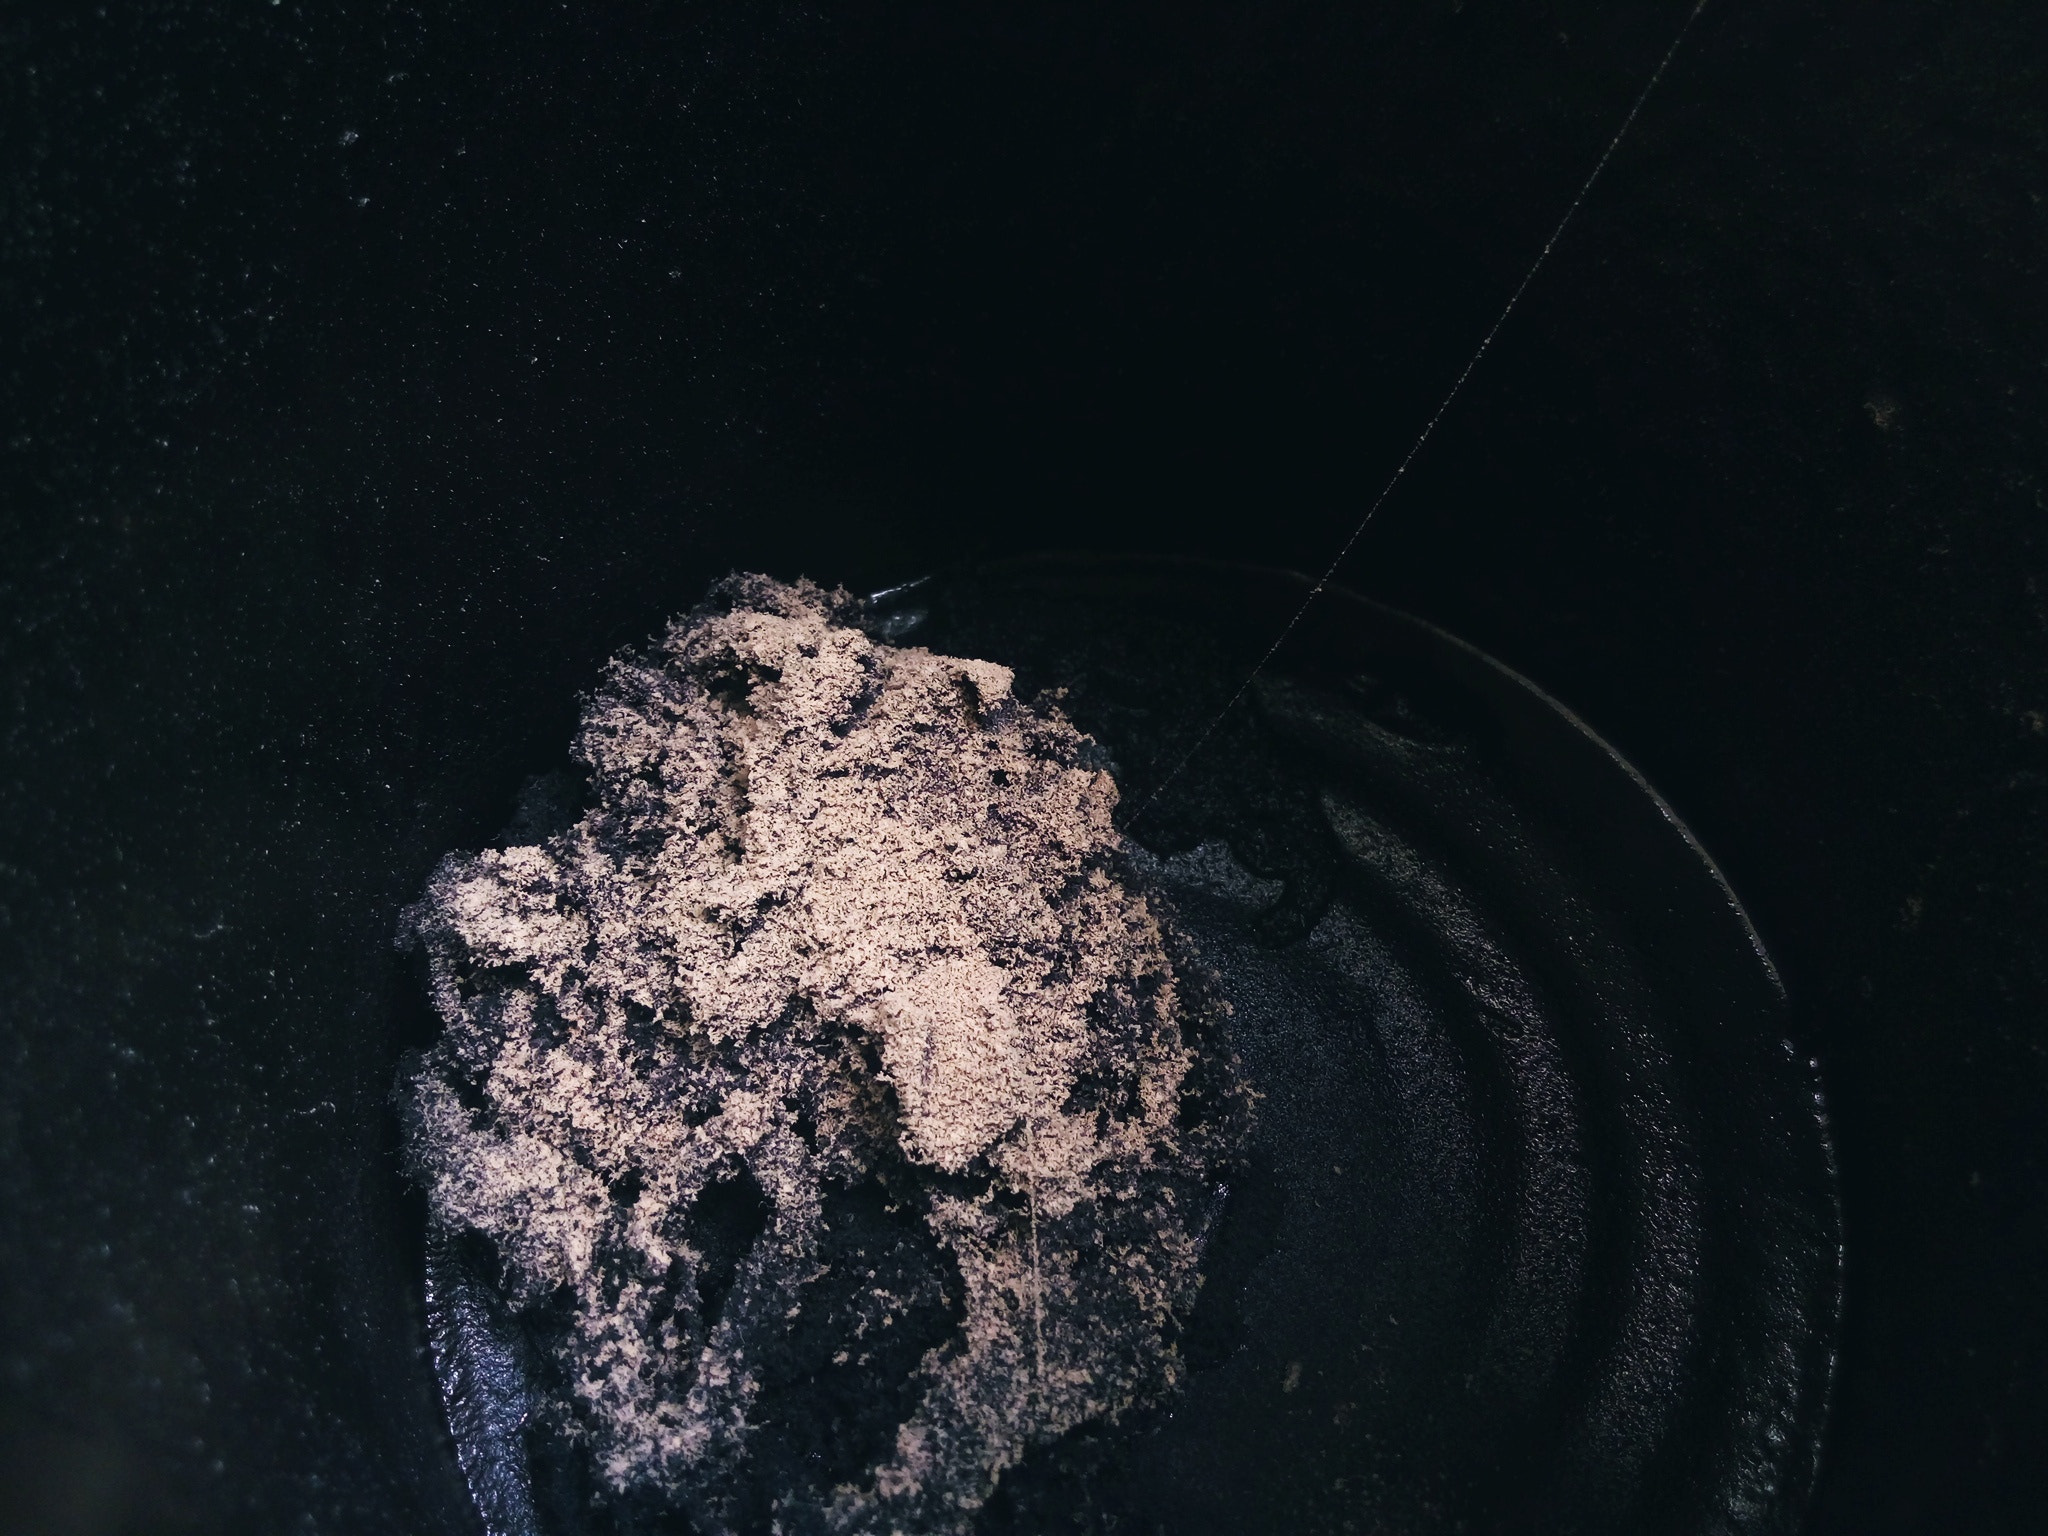 LG K430Y sample photo. Asteroide en un tarro photography